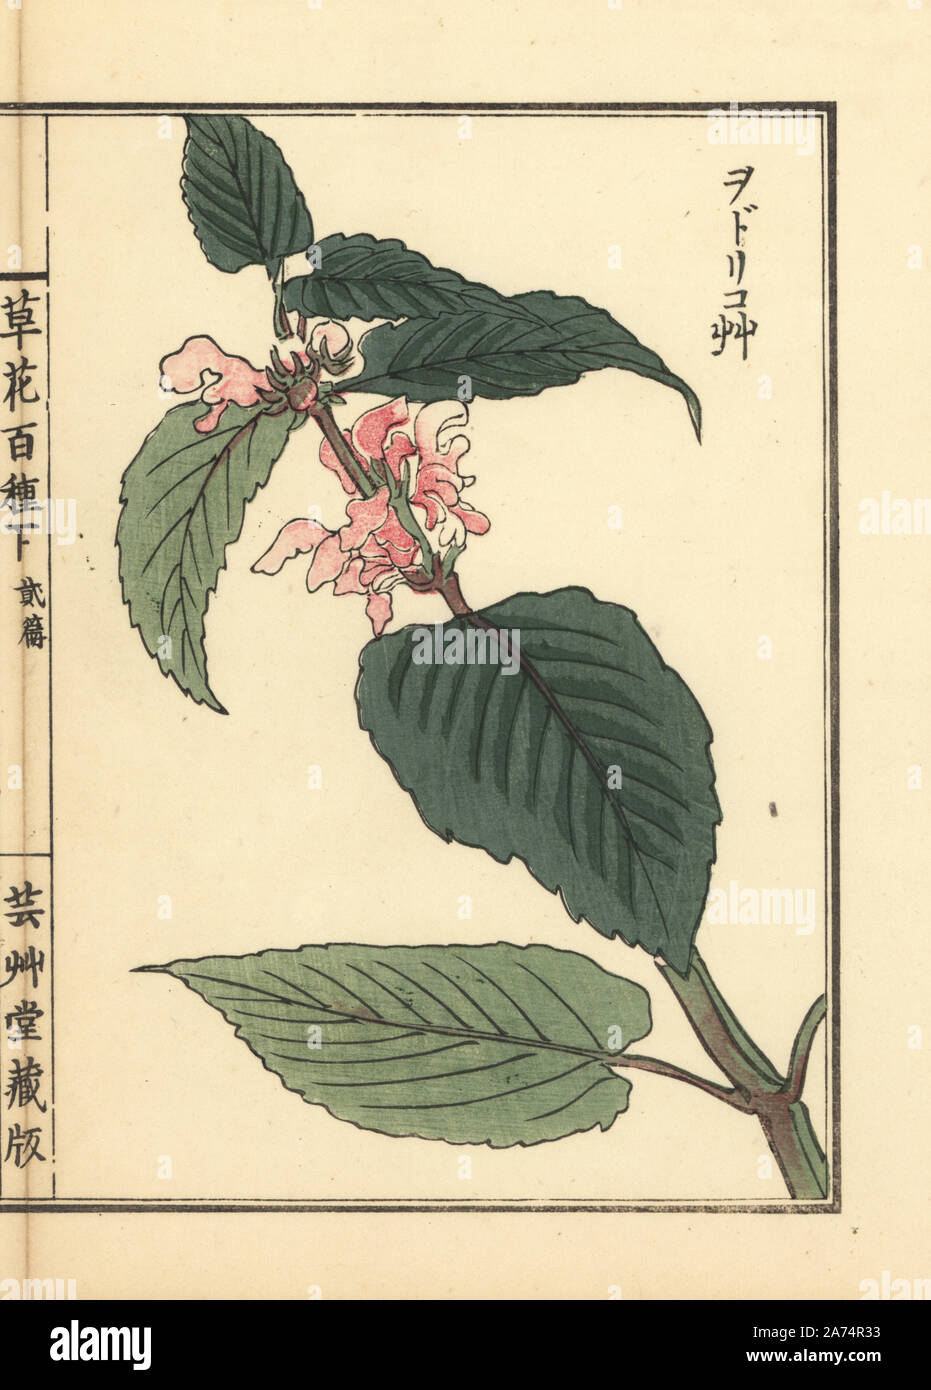 Odorikosou or white nettle, Lamium album var. barbatum. Handcoloured woodblock print by Kono Bairei from Kusa Bana Hyakushu (One Hundred Varieties of Flowers), Tokyo, Yamada, 1901. Stock Photo